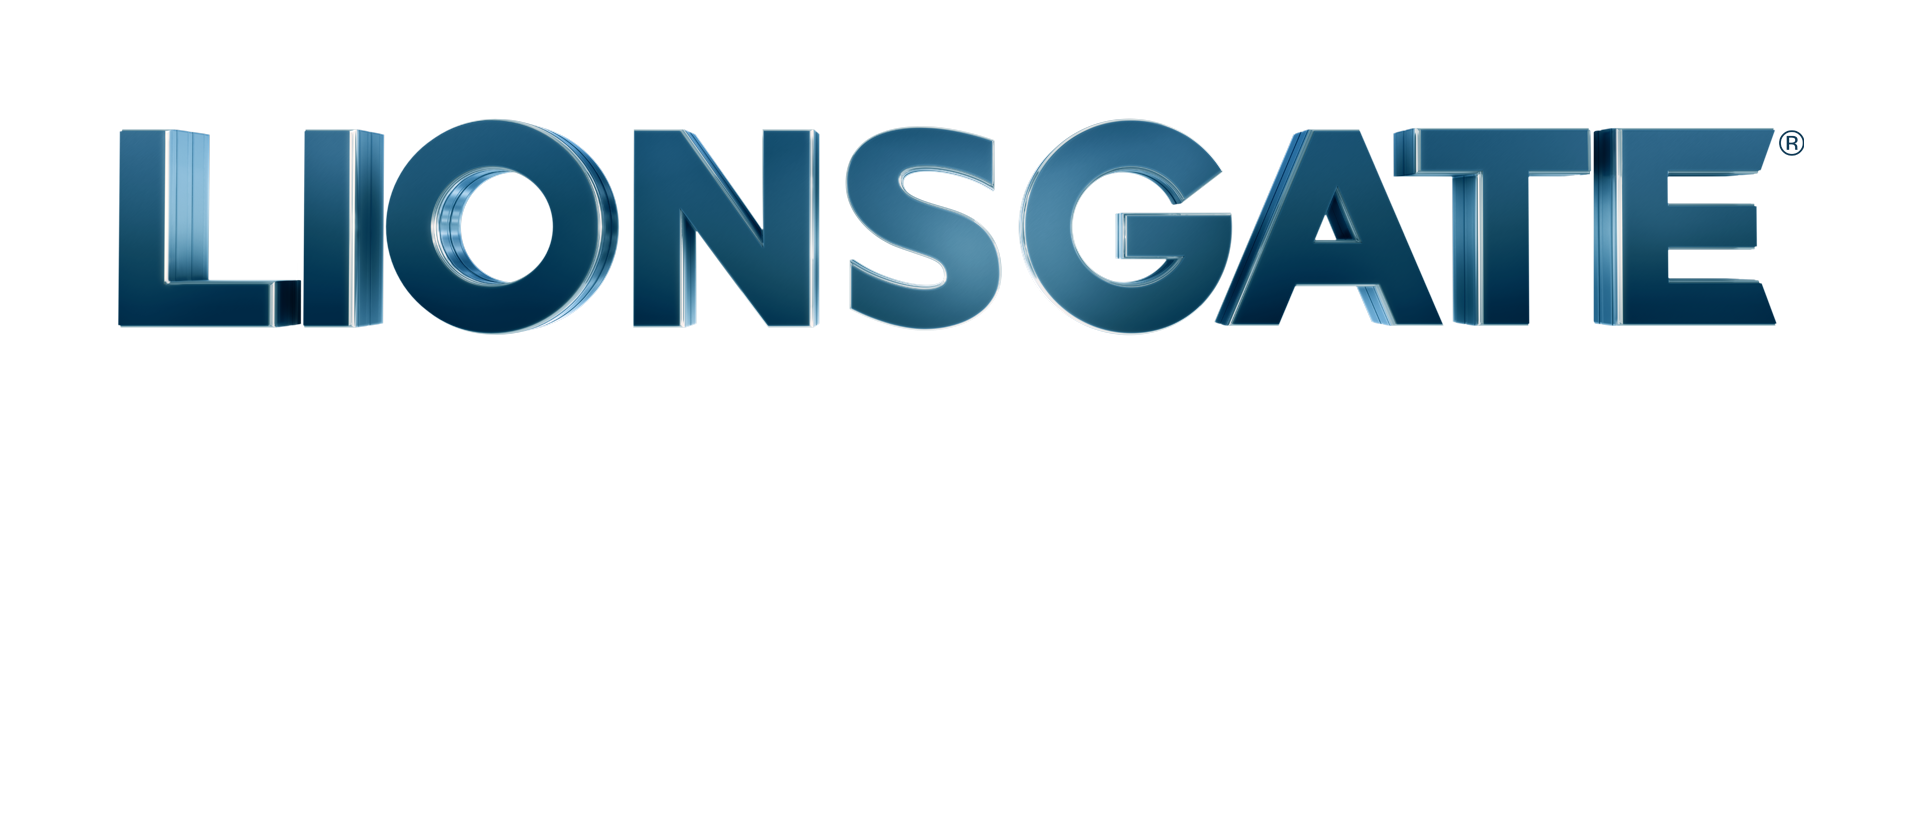 Lionsgate Magic Consultant Los Angeles